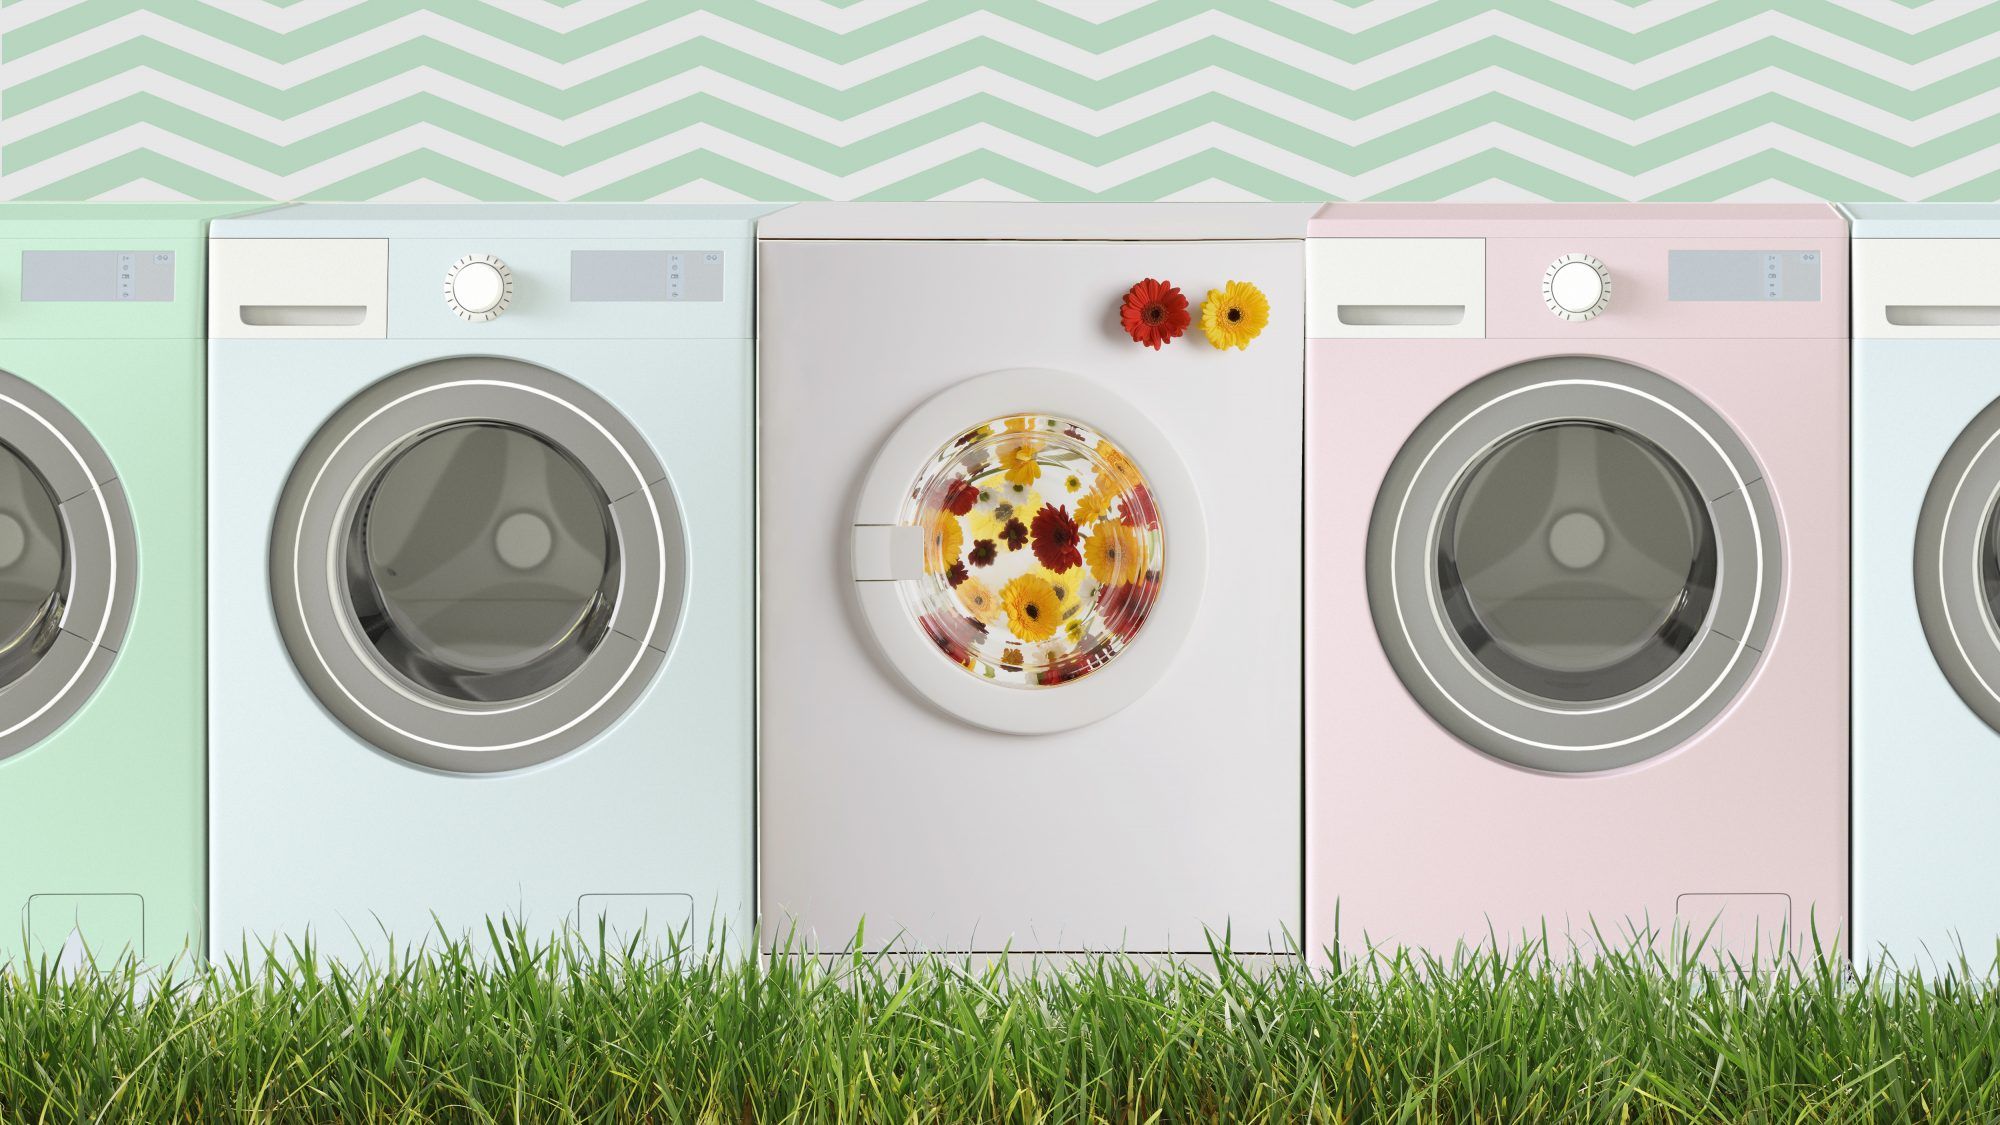 Dicas de lavanderia naturais sem produtos químicos, máquinas de lavar coloridas